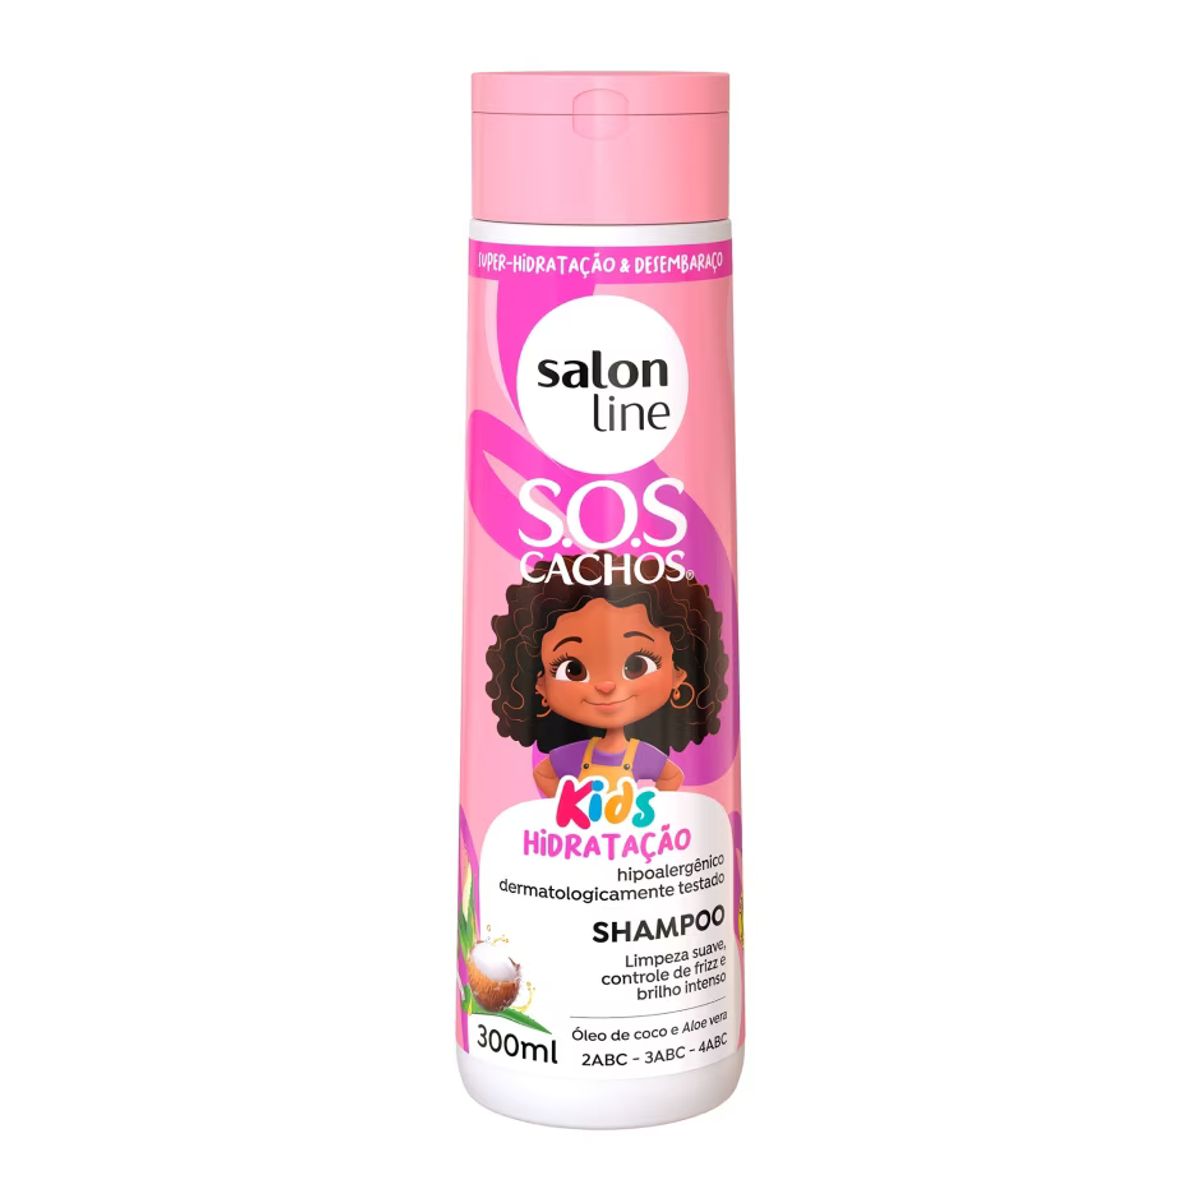 Shampoo Salon Line SOS Cachos Kids Hidratação 300ml